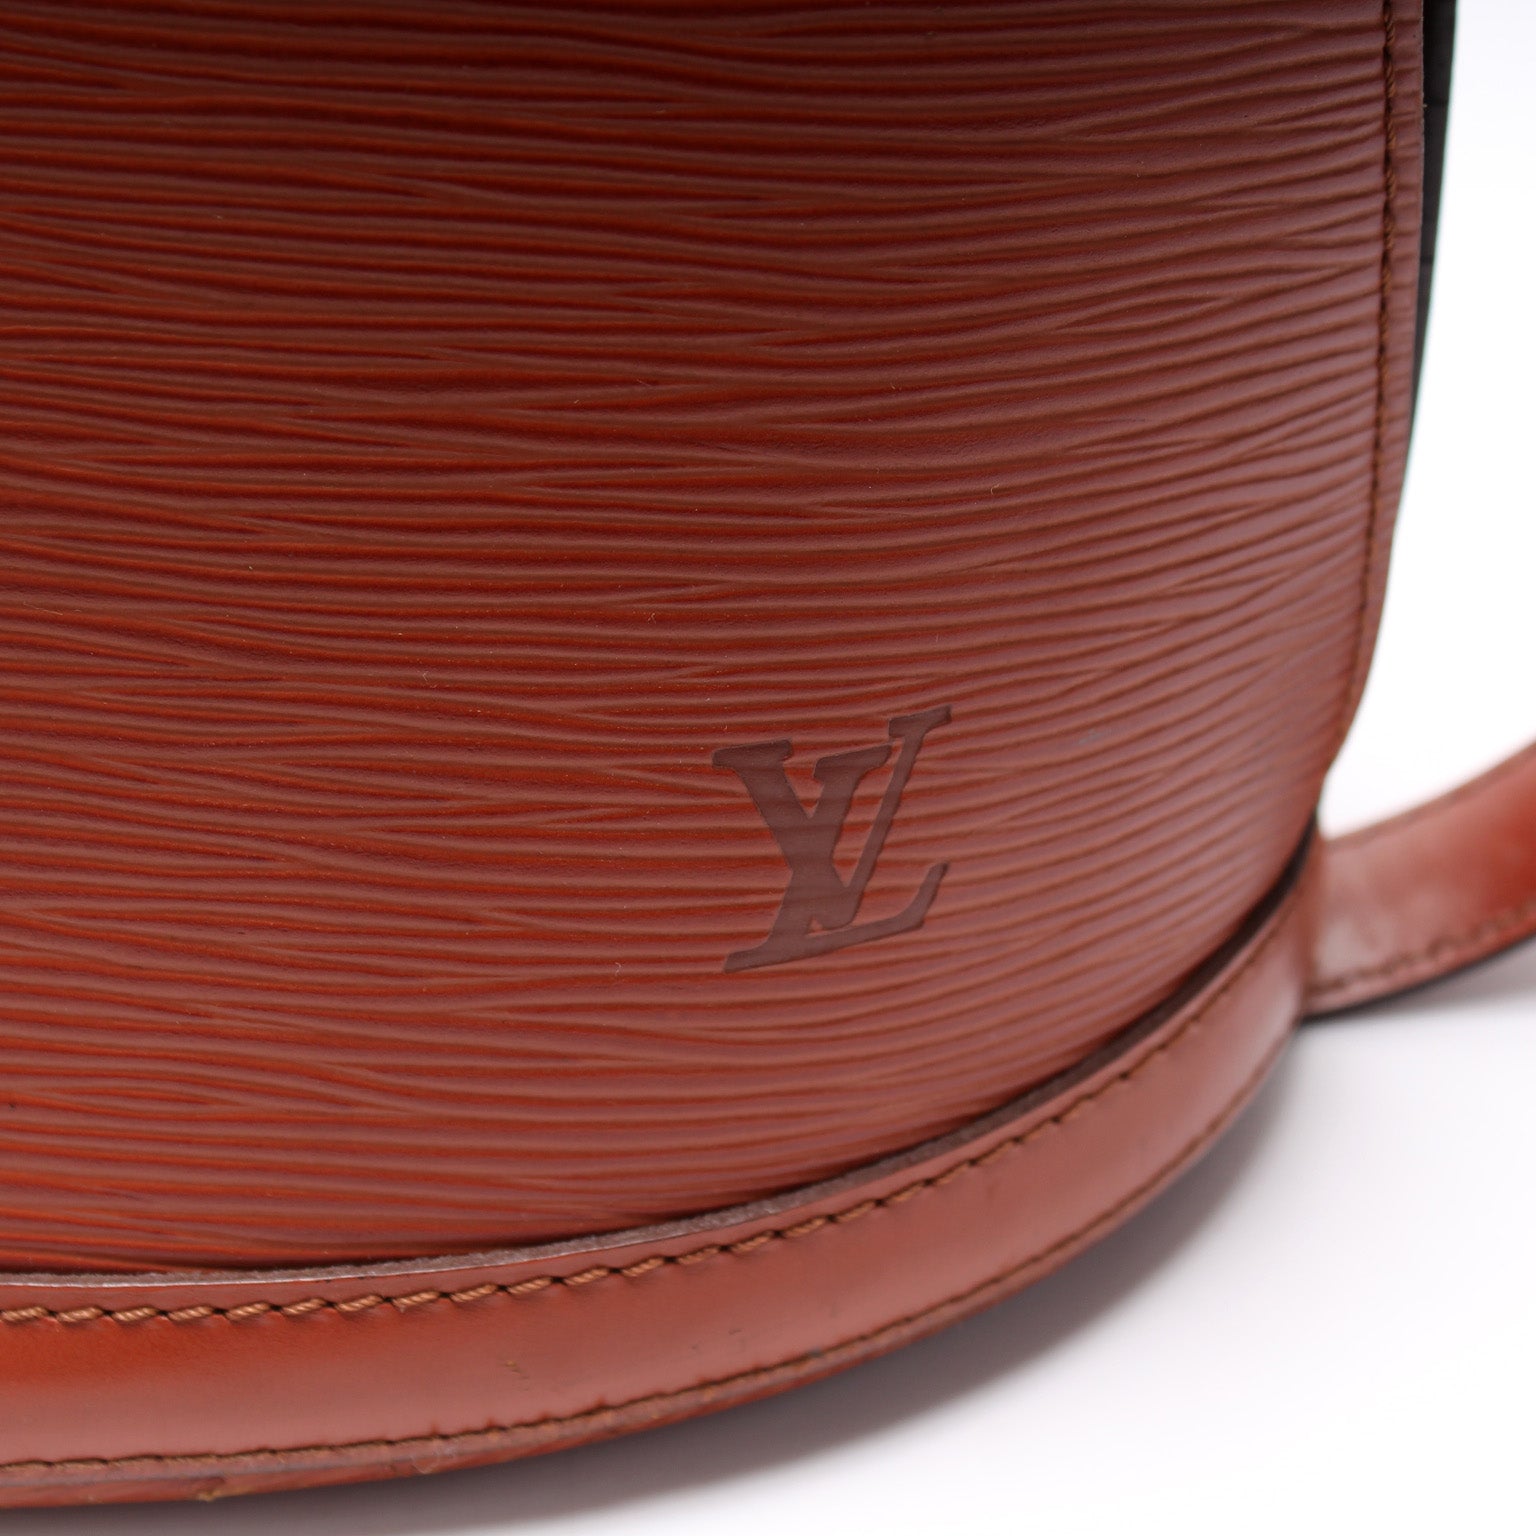 Cluny Shoulder Bag Epi Vintage – Keeks Designer Handbags